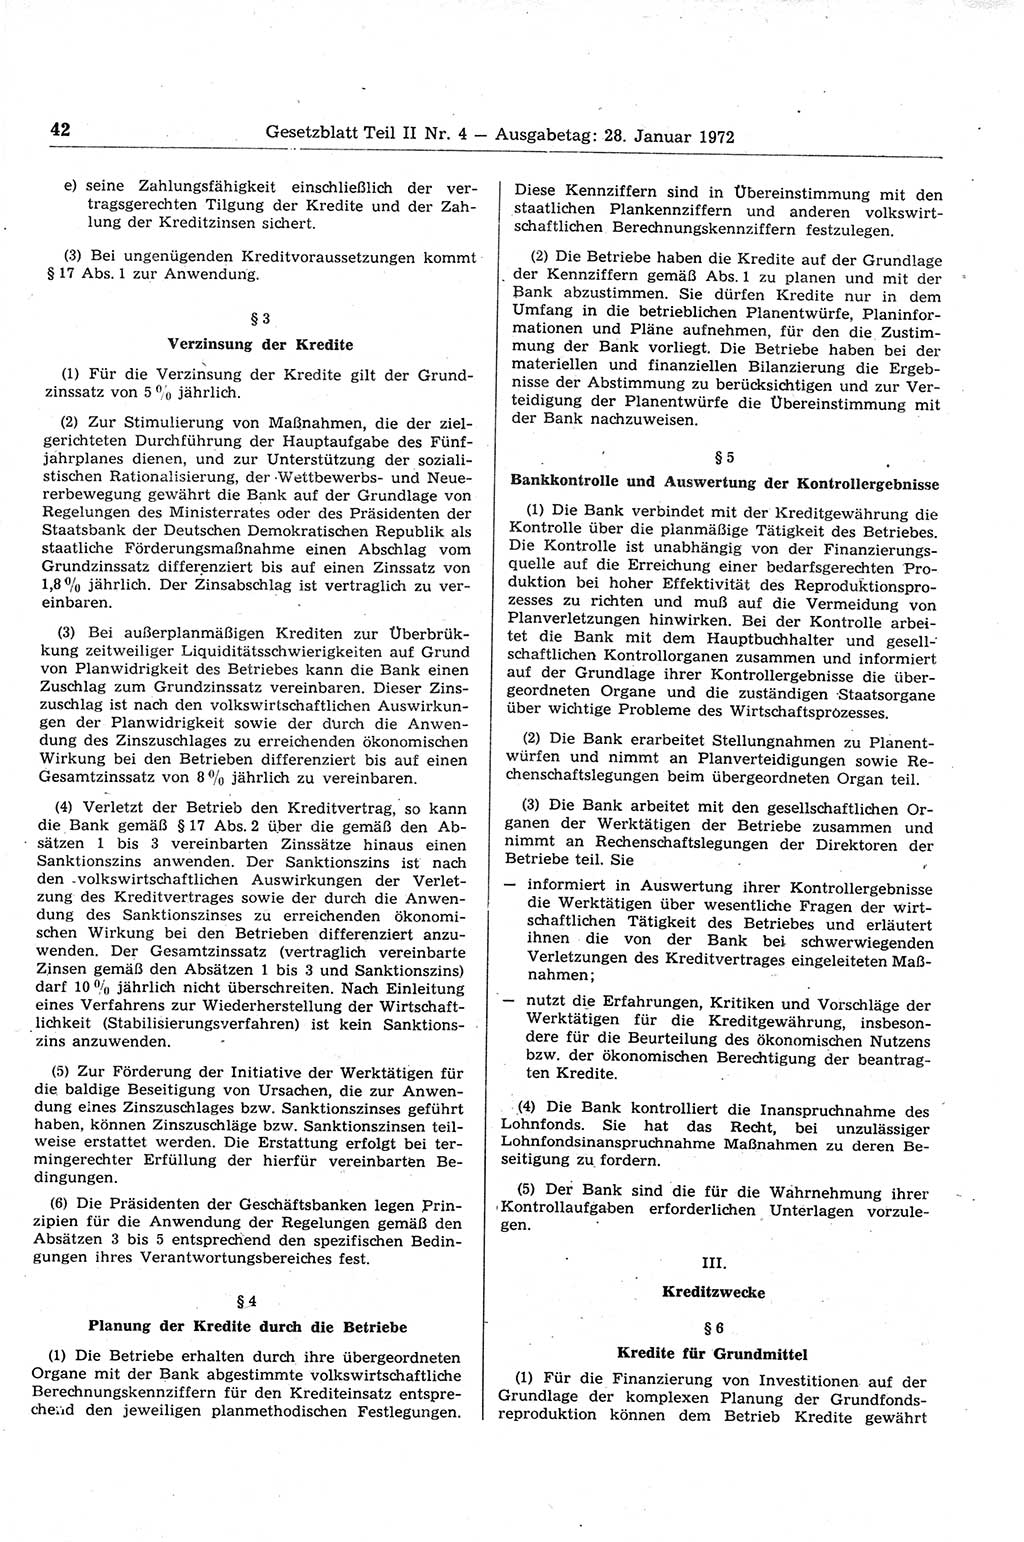 Gesetzblatt (GBl.) der Deutschen Demokratischen Republik (DDR) Teil ⅠⅠ 1972, Seite 42 (GBl. DDR ⅠⅠ 1972, S. 42)